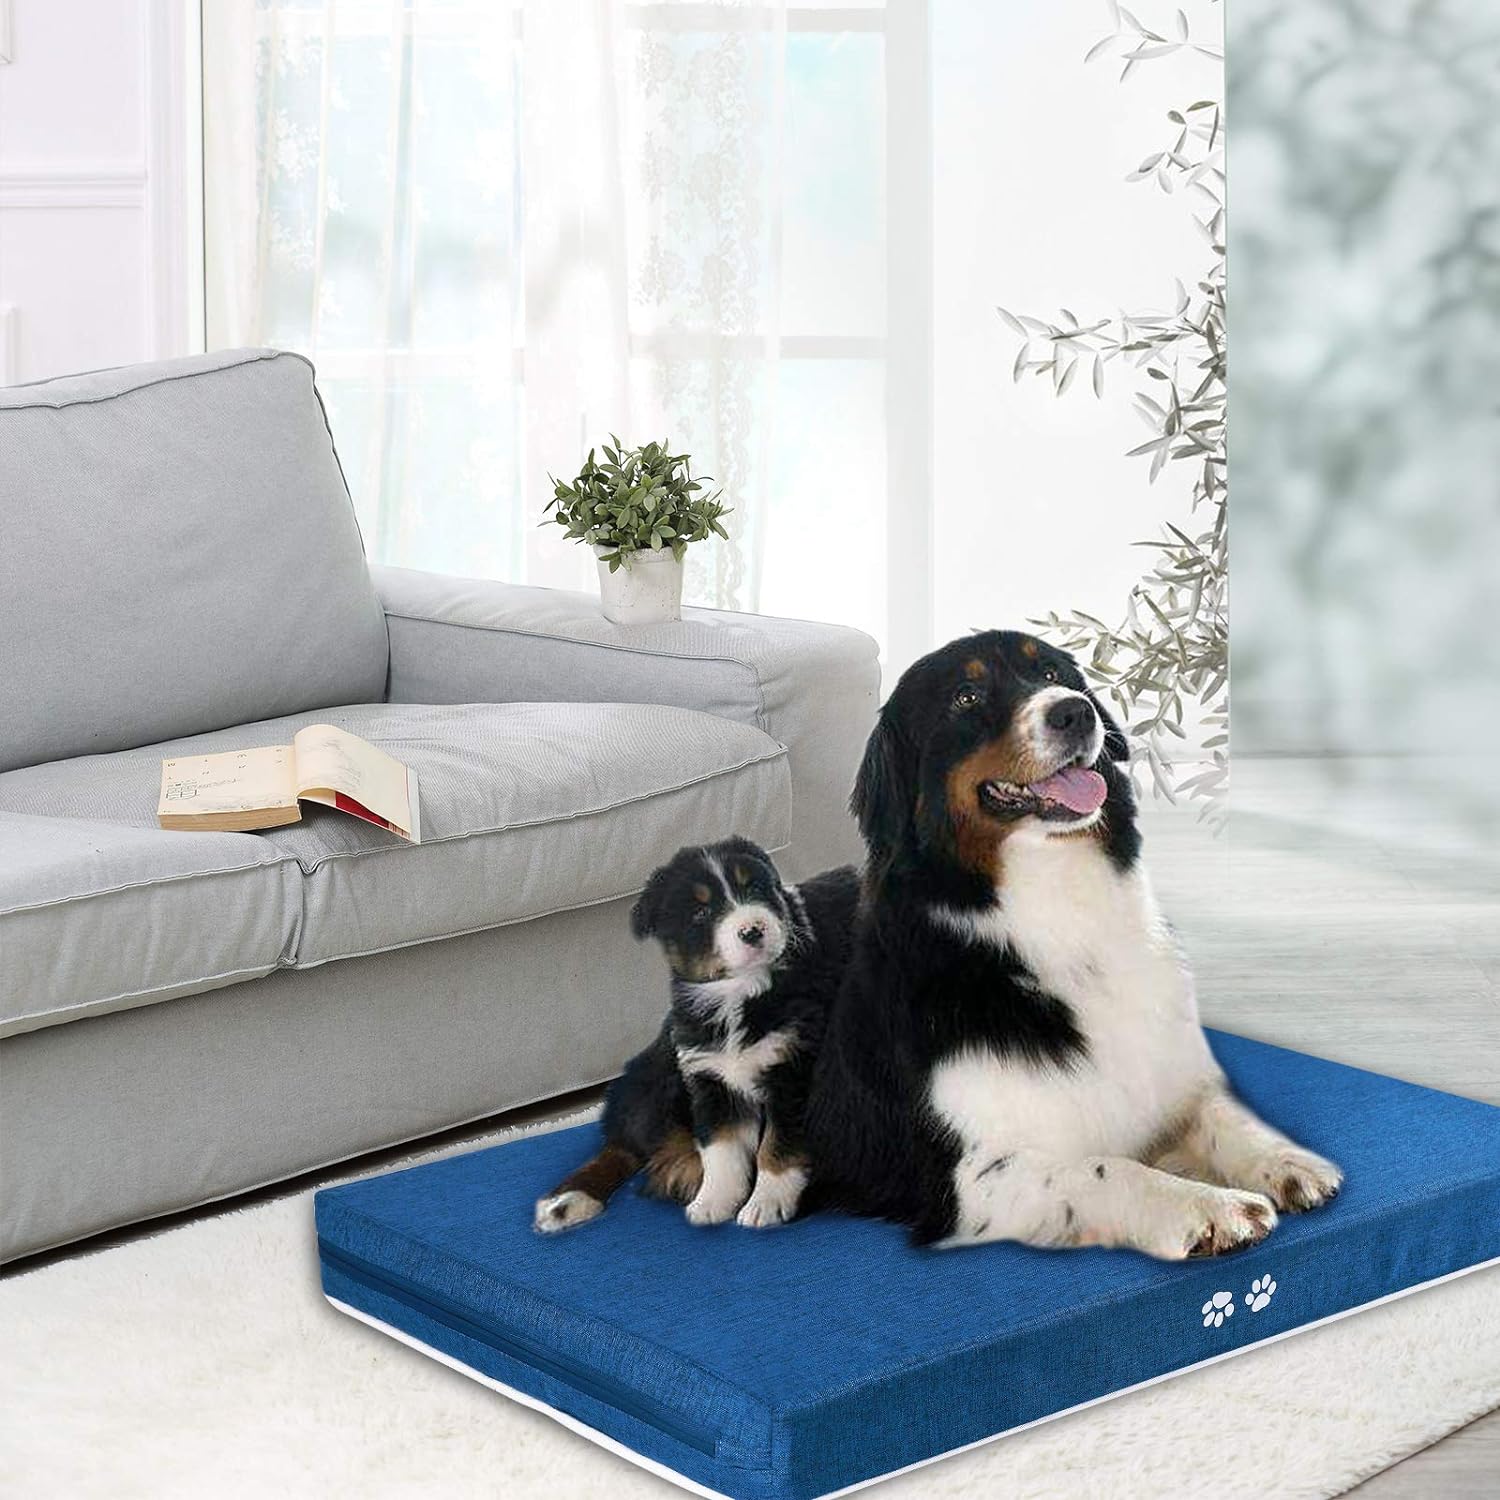 Tapete de cama para perros pequeños, medianos, grandes y extra grandes,